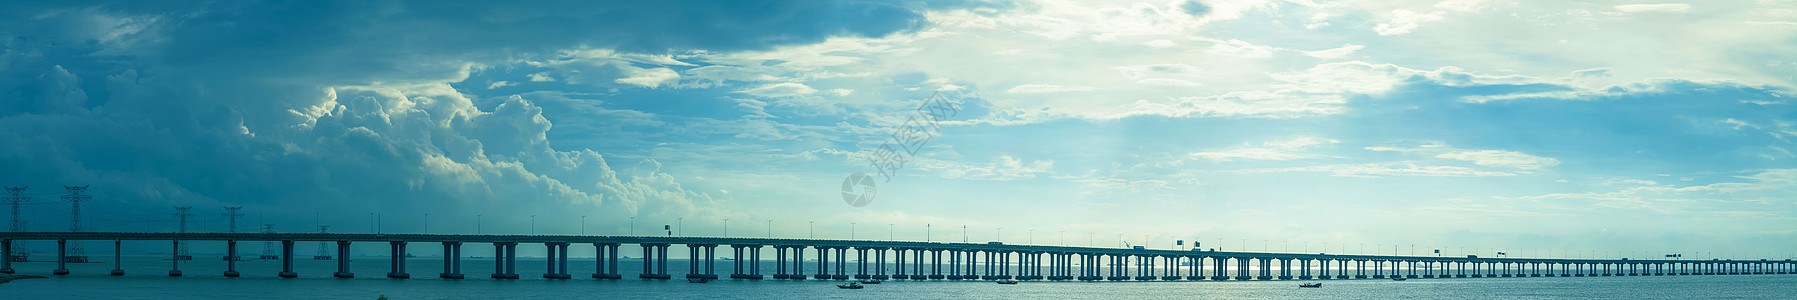 海上物流高速公路跨海大桥背景